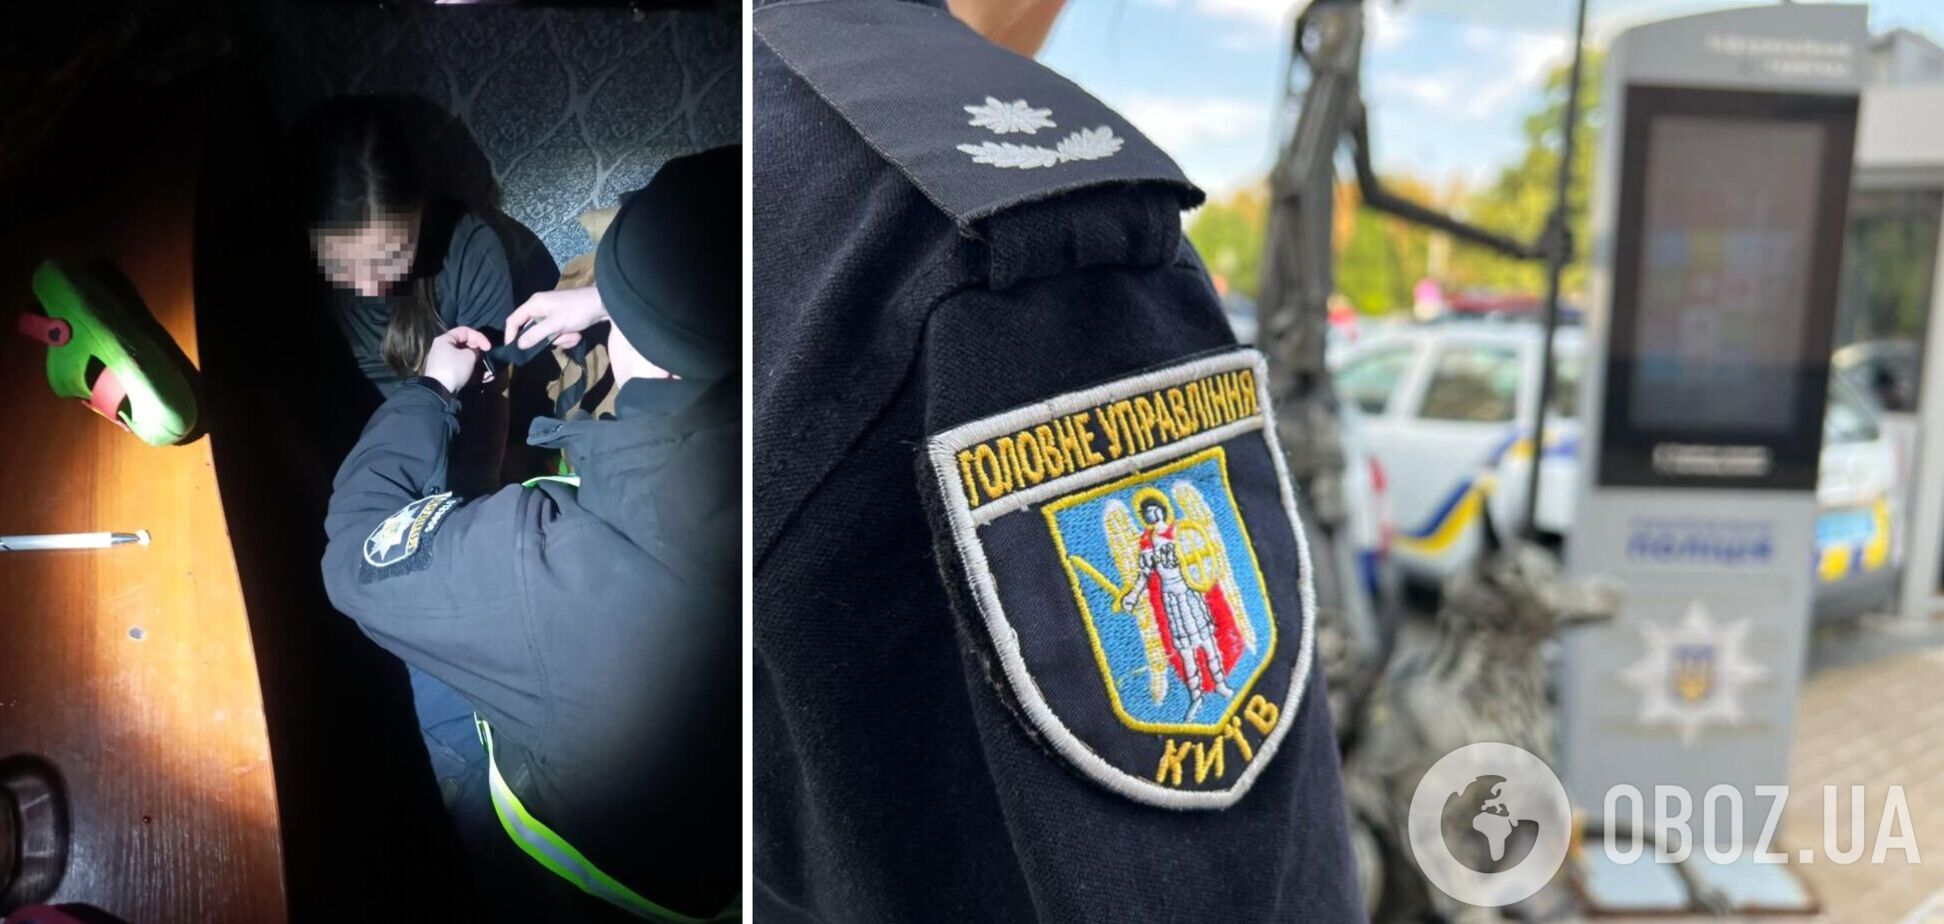 Правоохранители спасли киевлянку